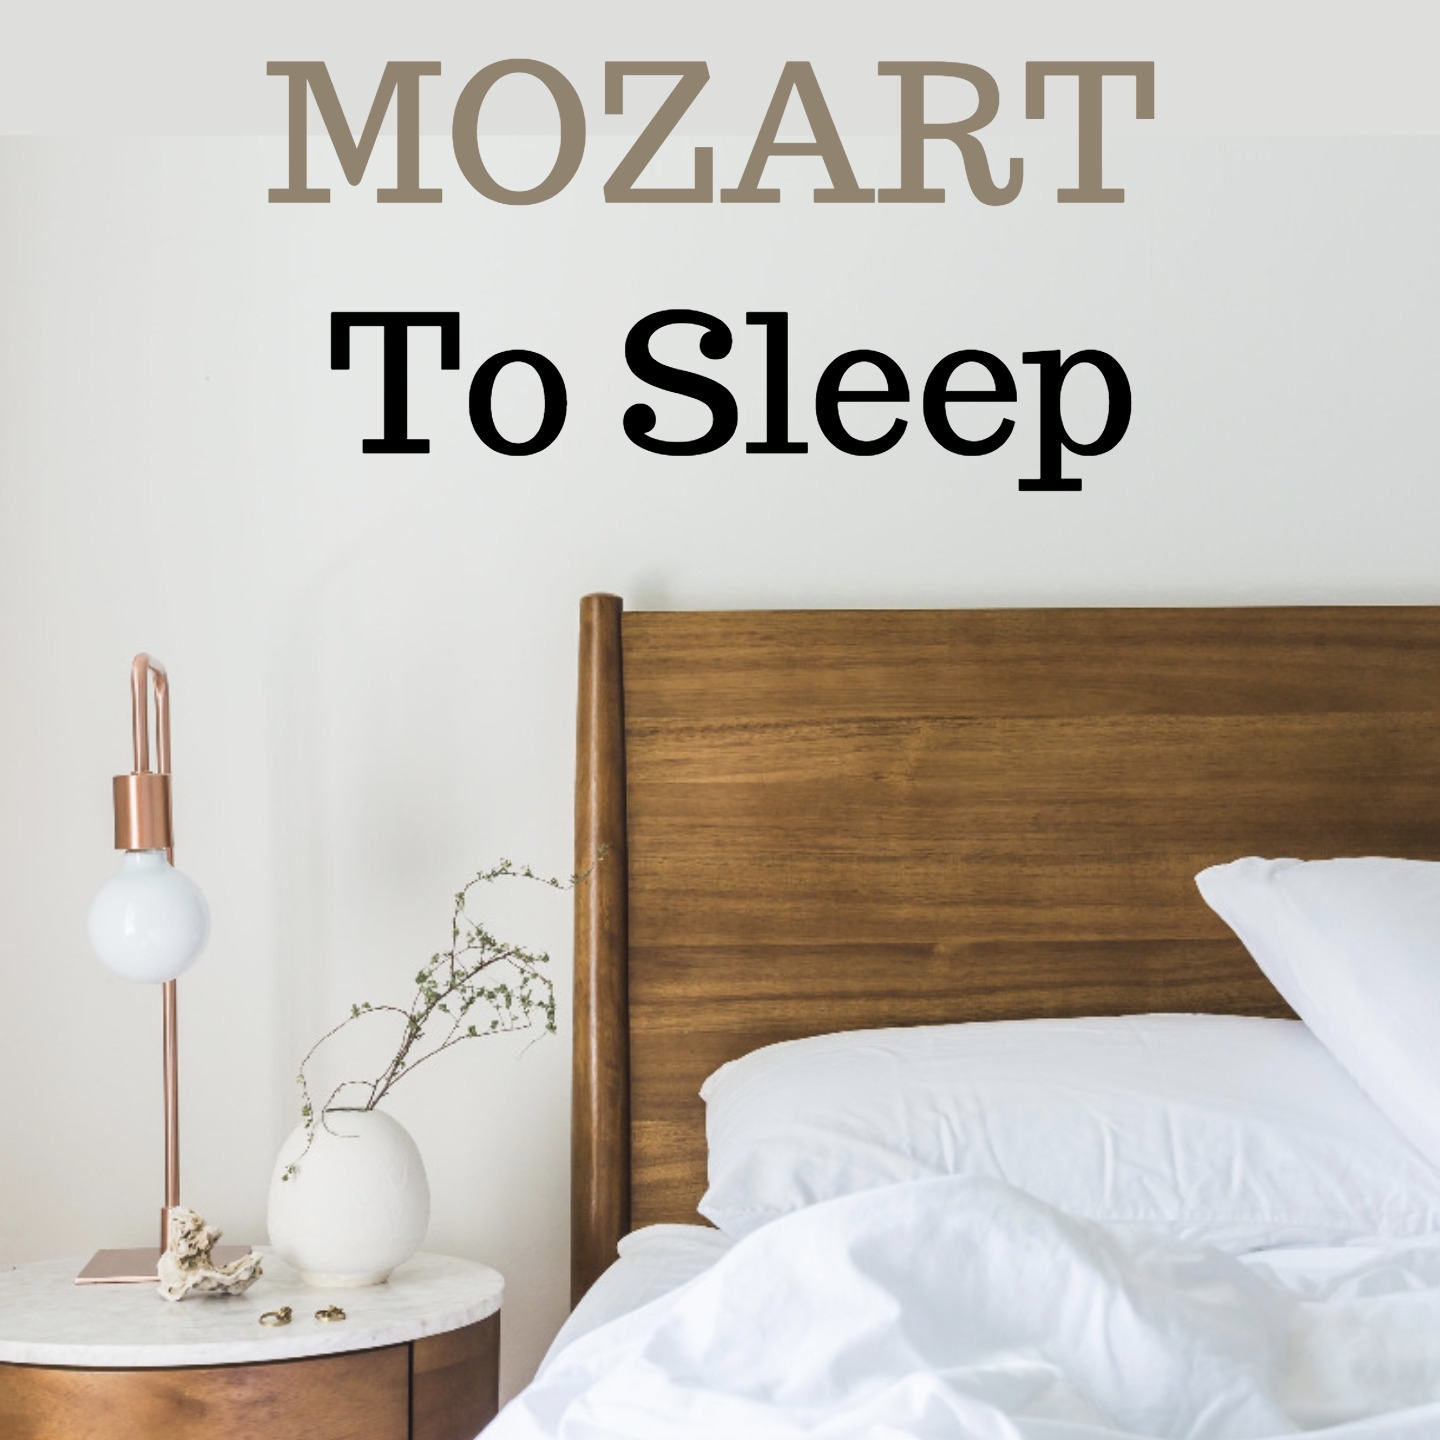 Mozart to sleep